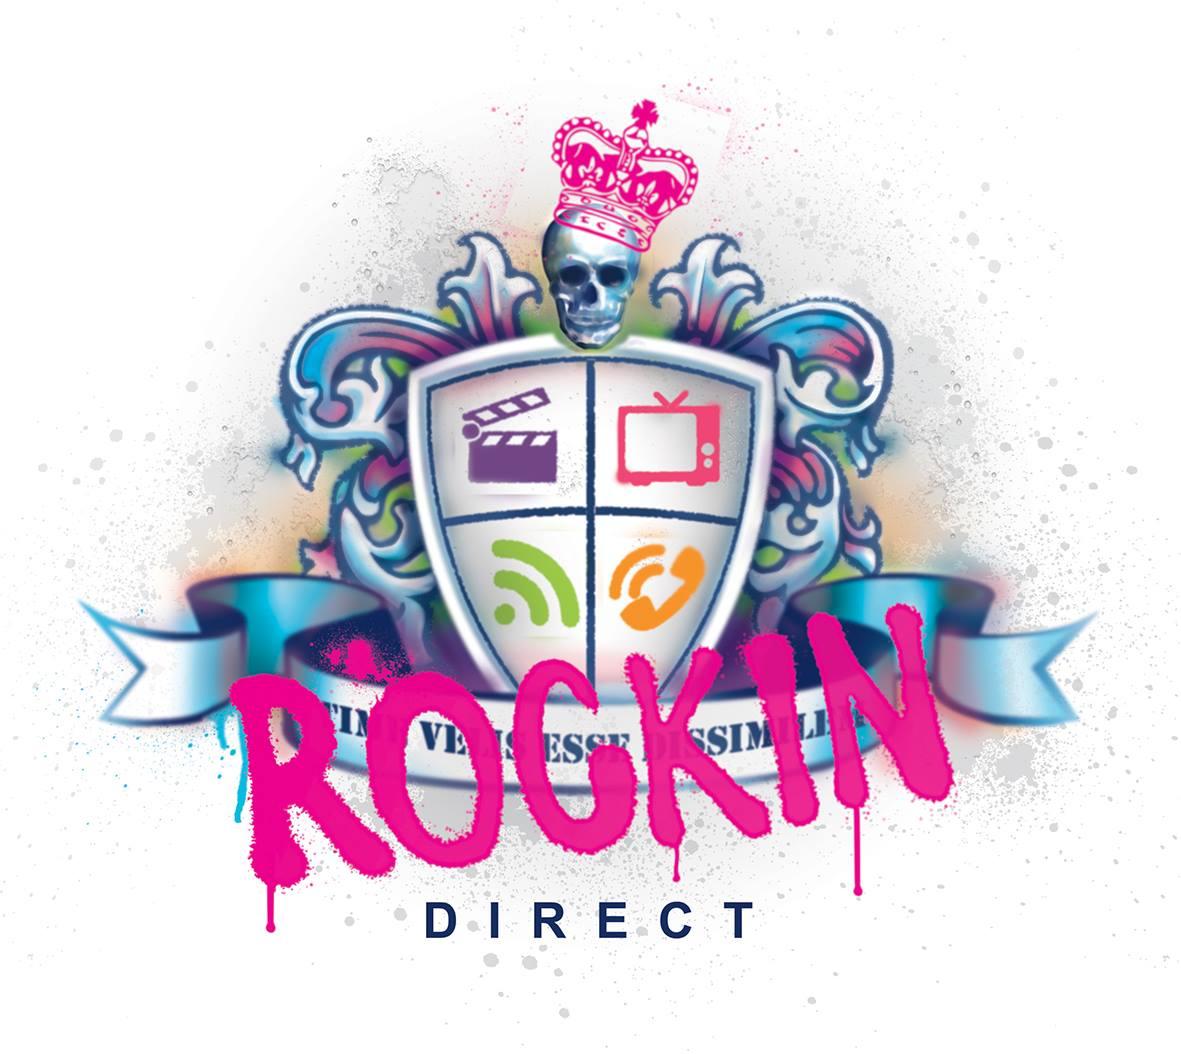 Rockin Direct